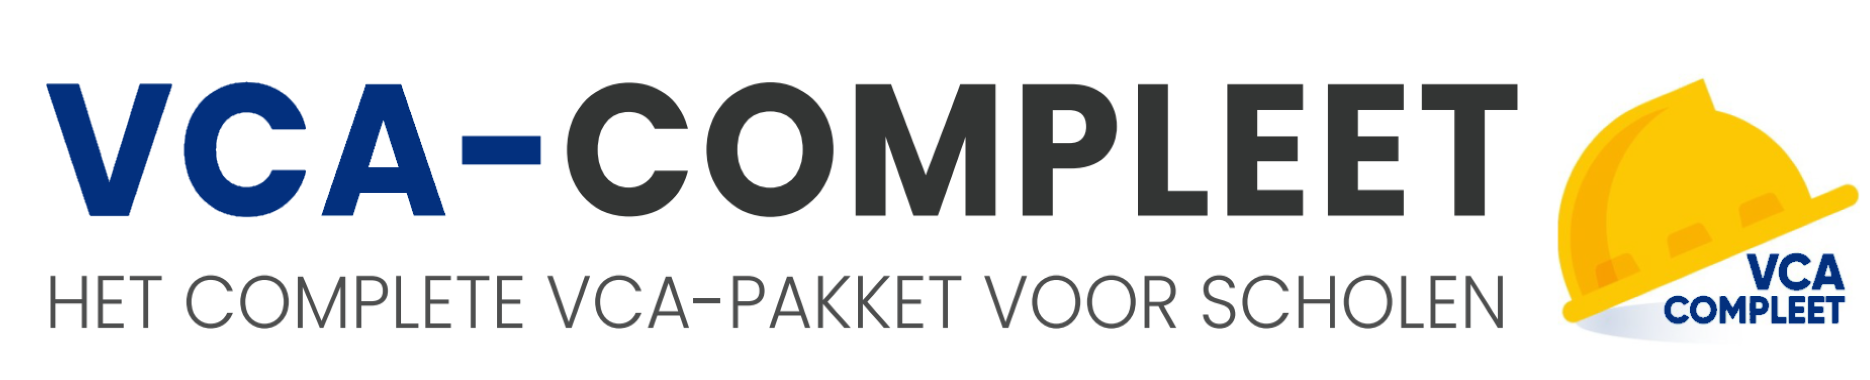 VCA-Compleet